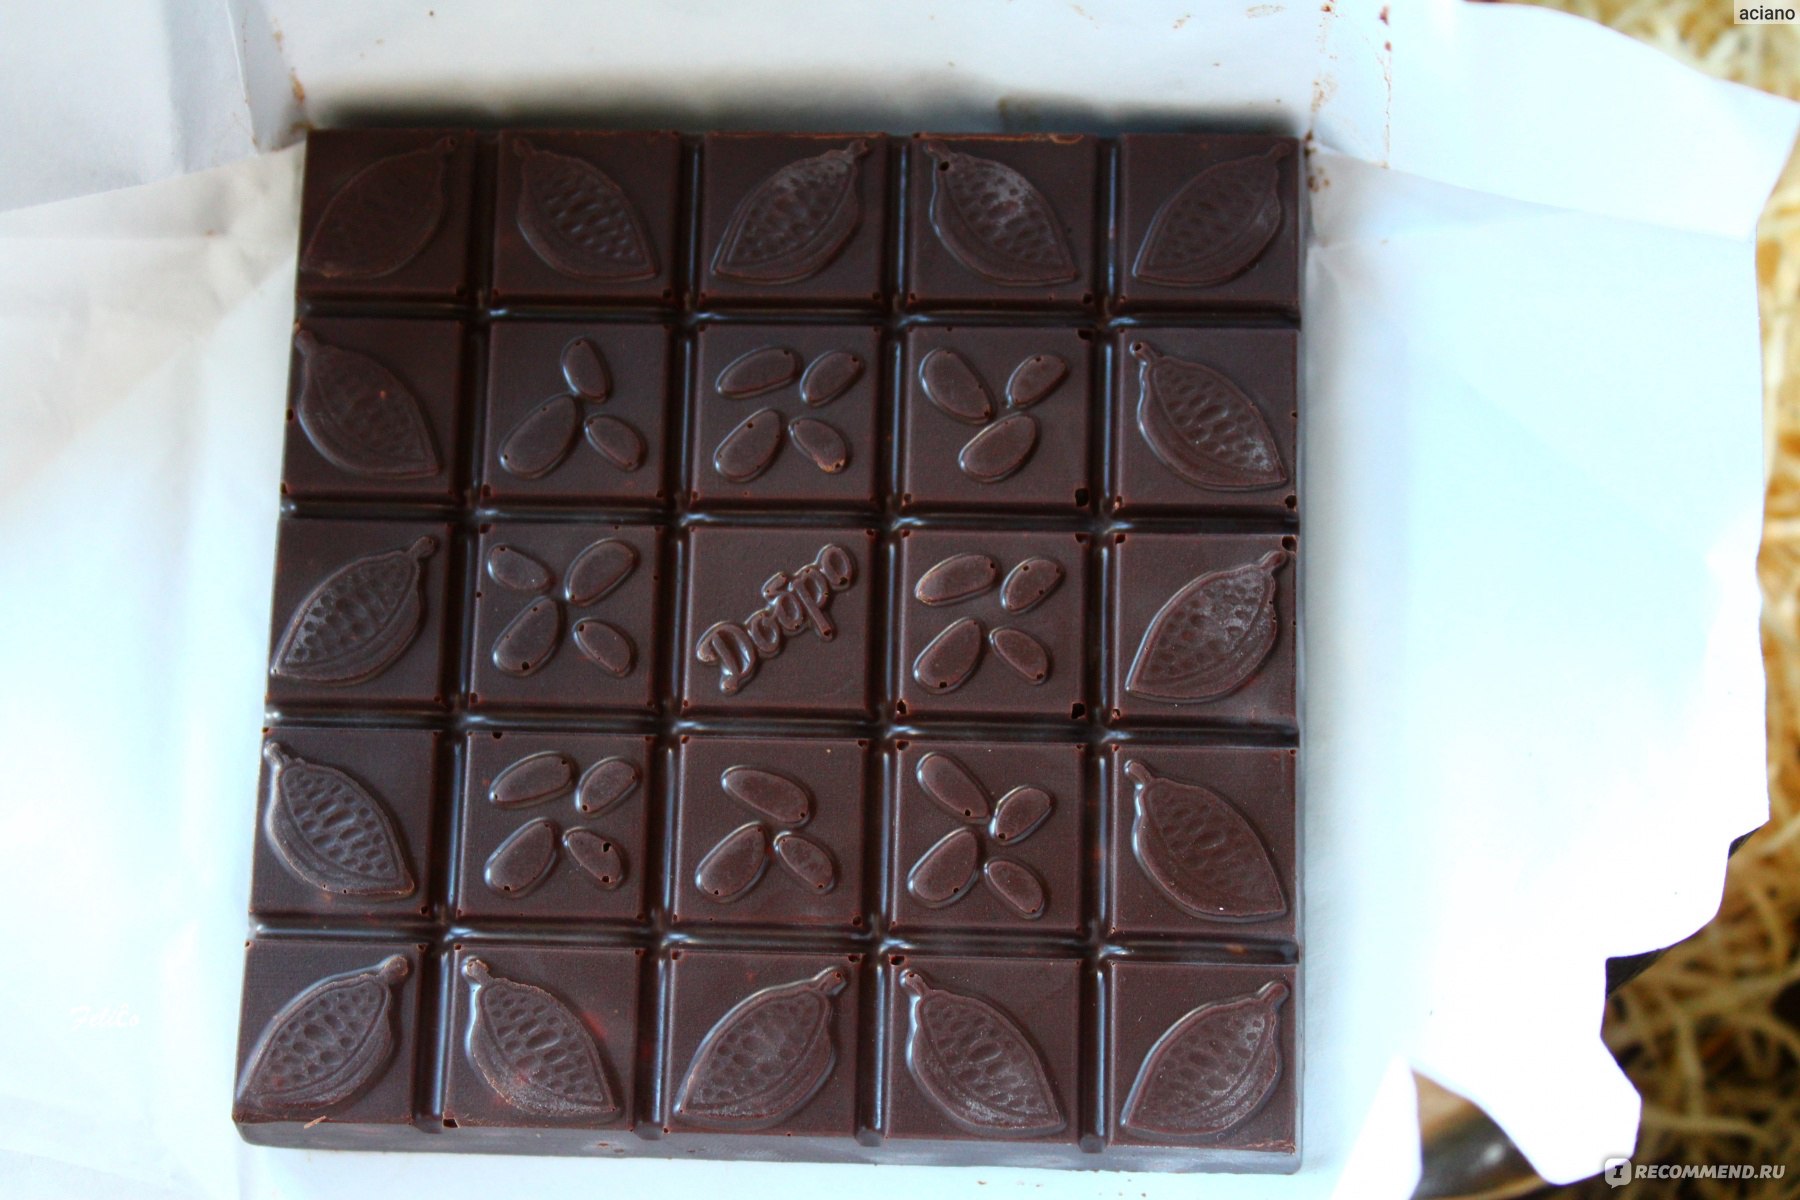 Шоколад Маневр